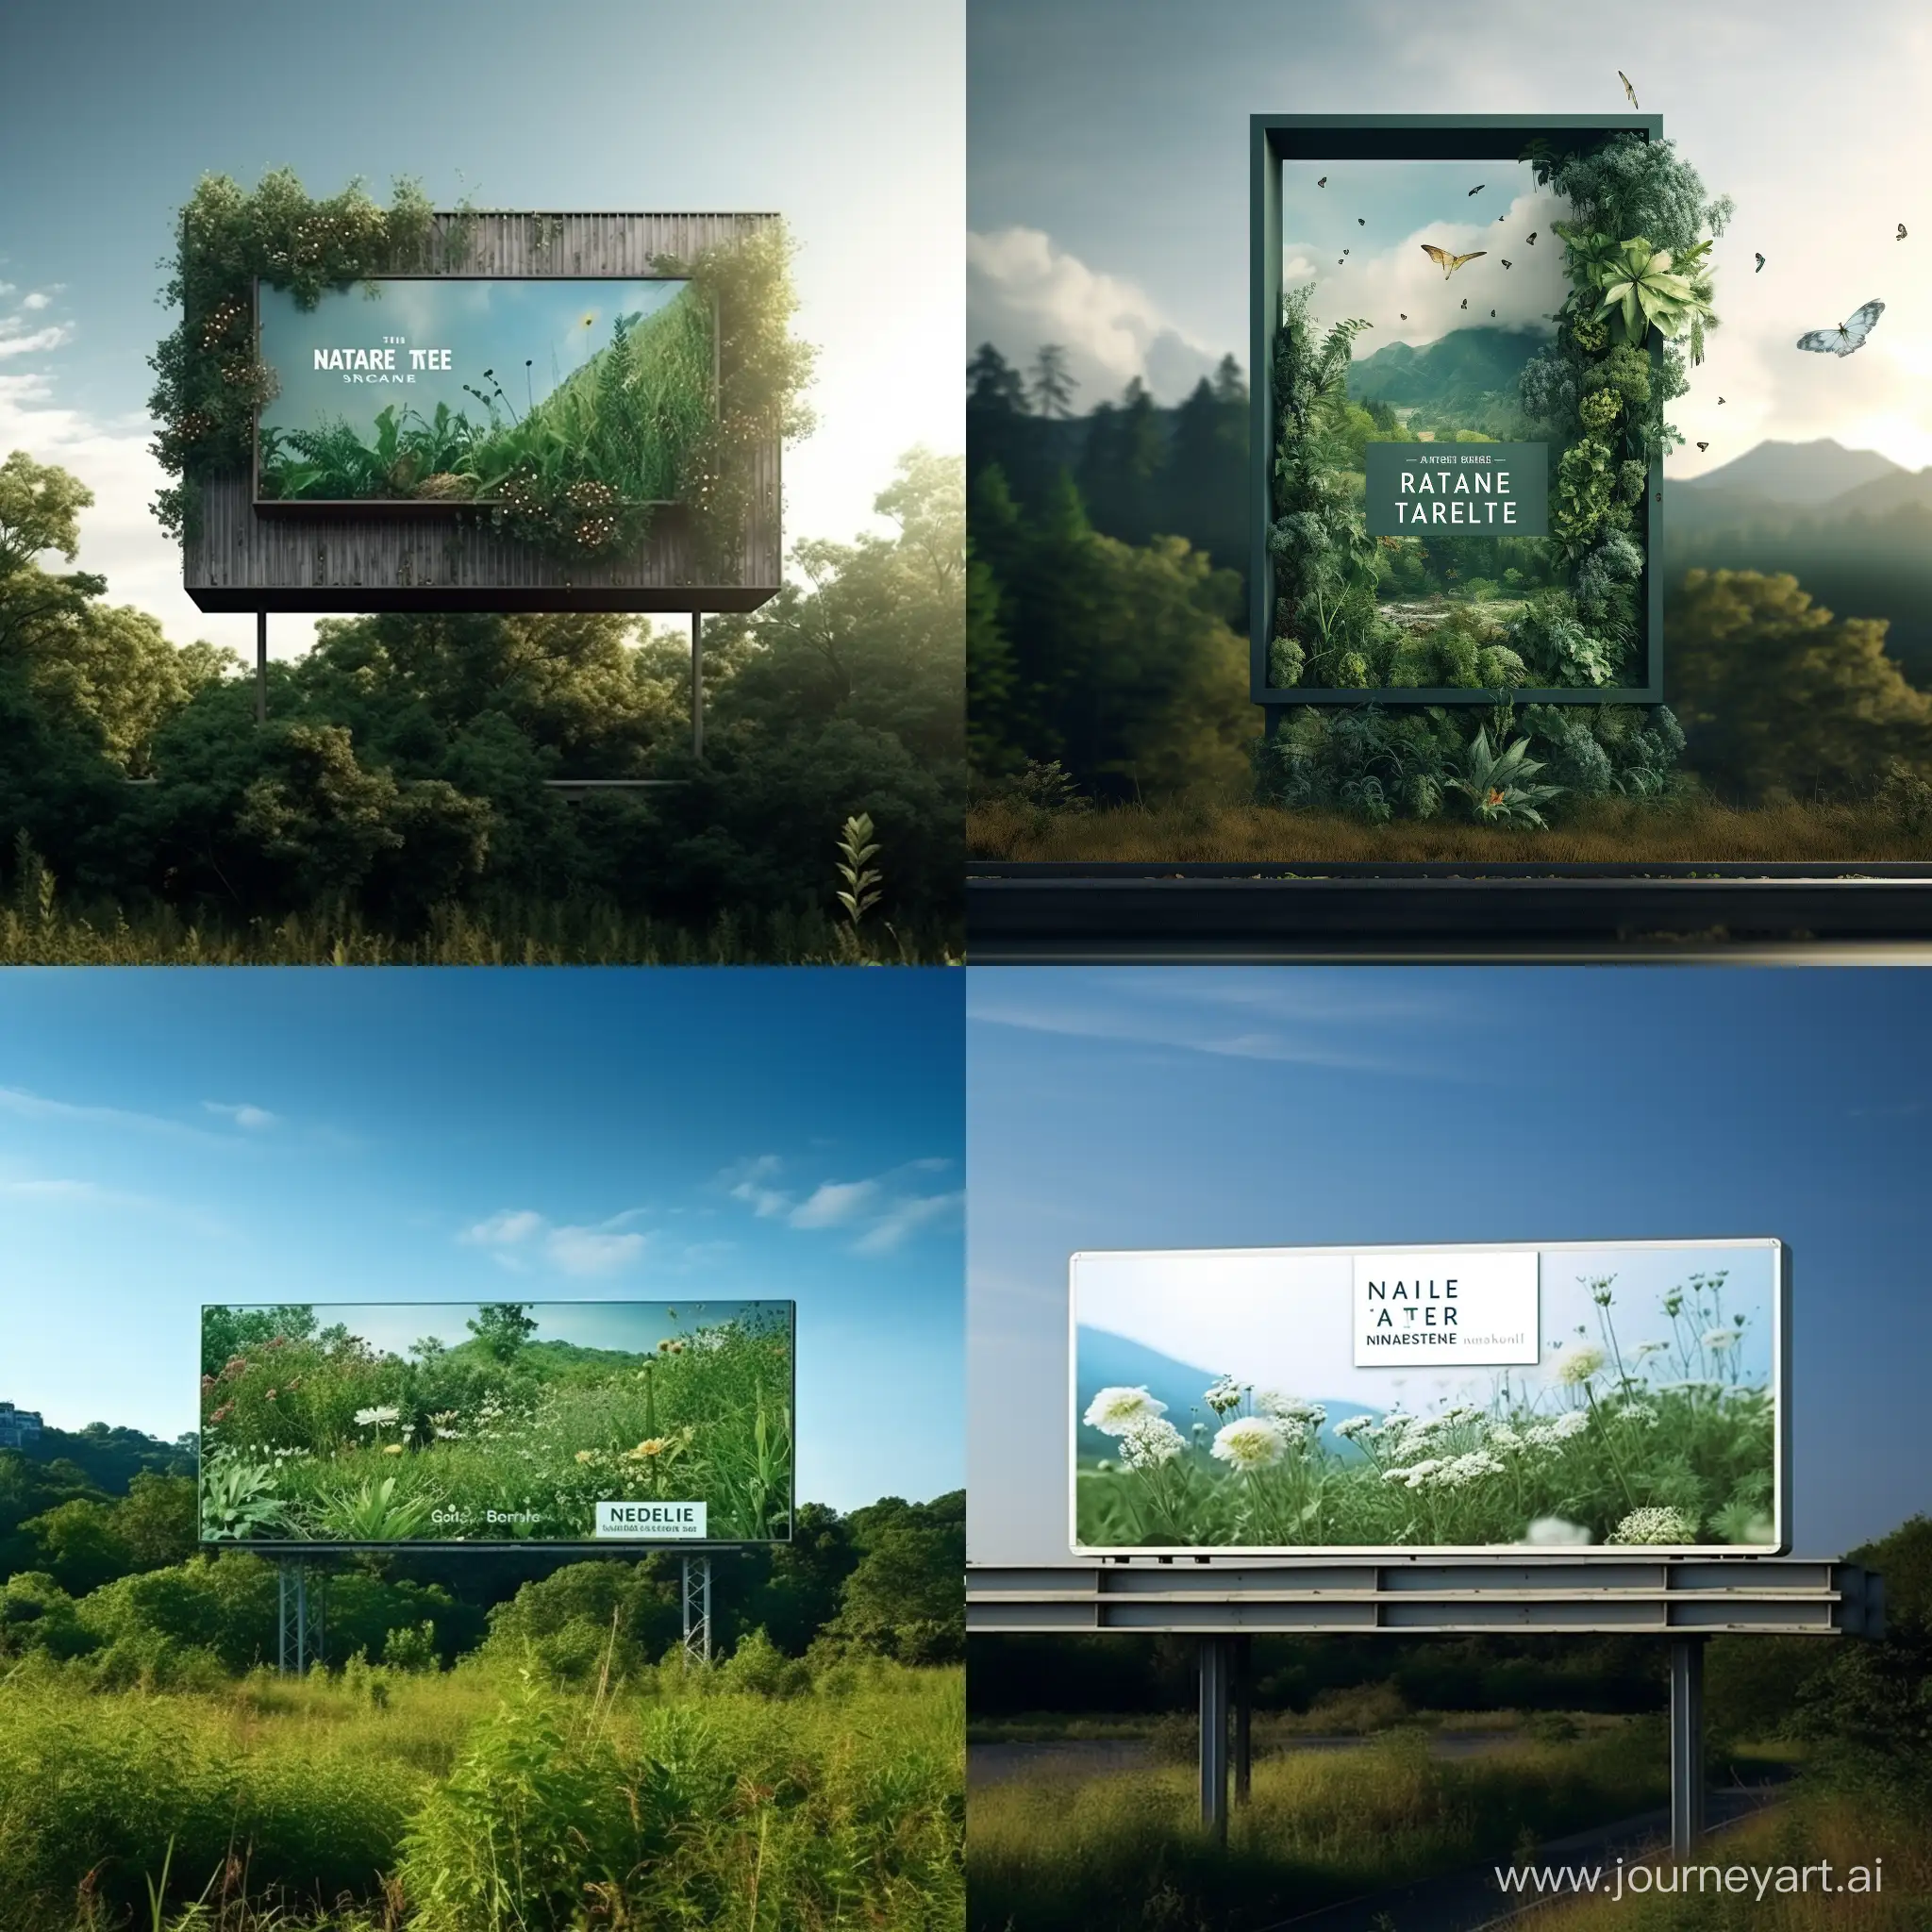 Scenic-Real-Estate-Billboard-in-Nature-11-Aspect-Ratio